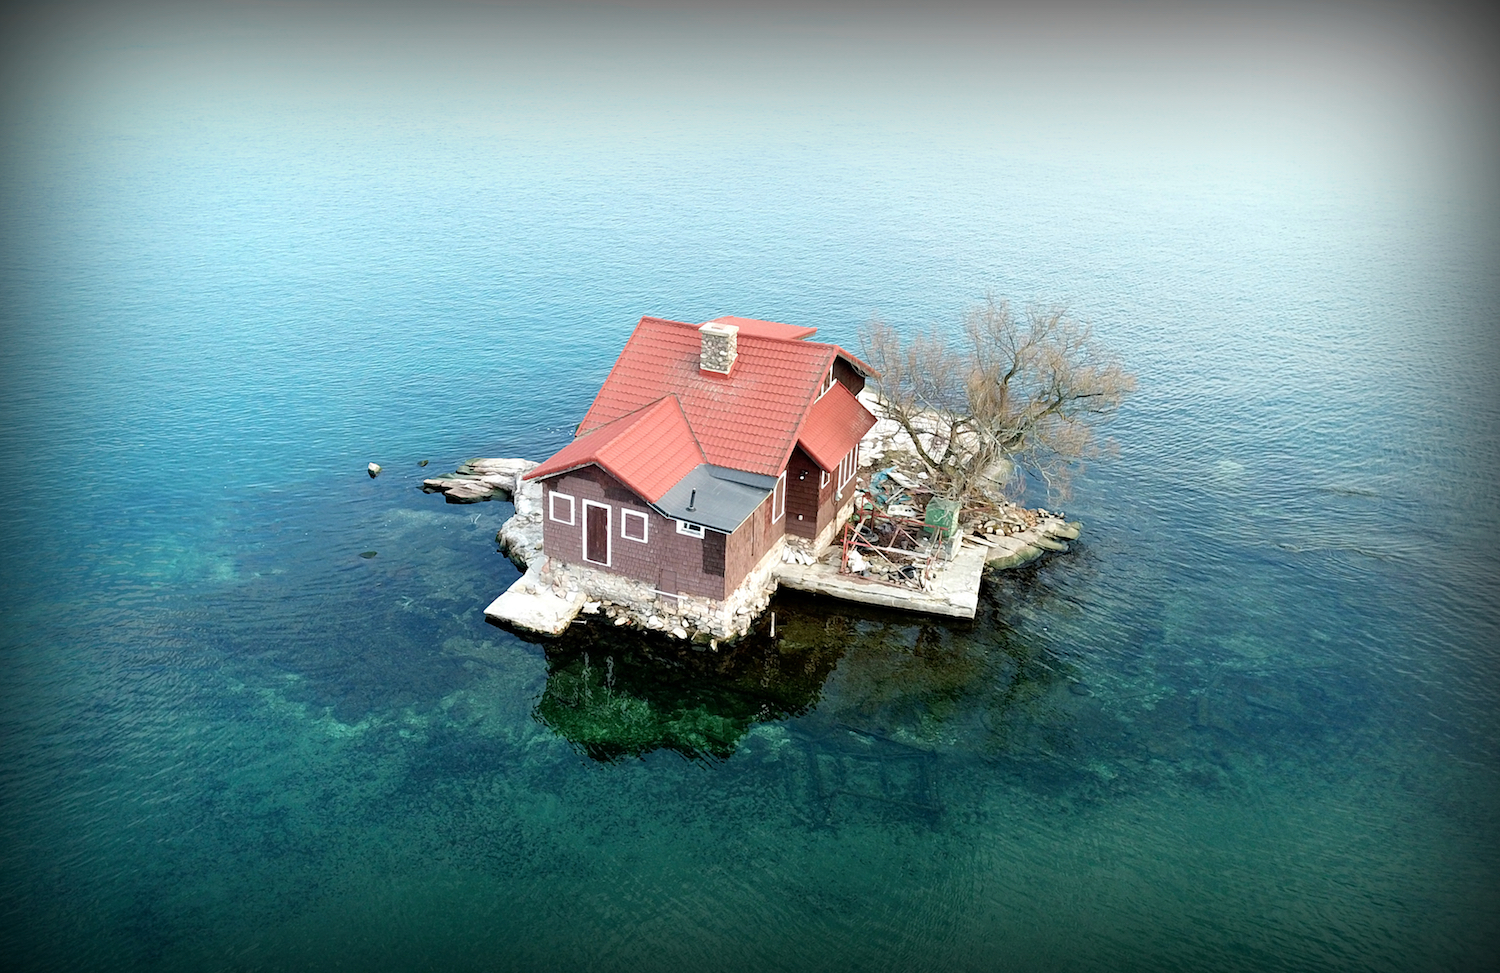 Đảo Just Room Enough tọa lạc tại Vịnh Alexandria, New York. (Ảnh: BeatoAerialPhotography/Shutterstock)